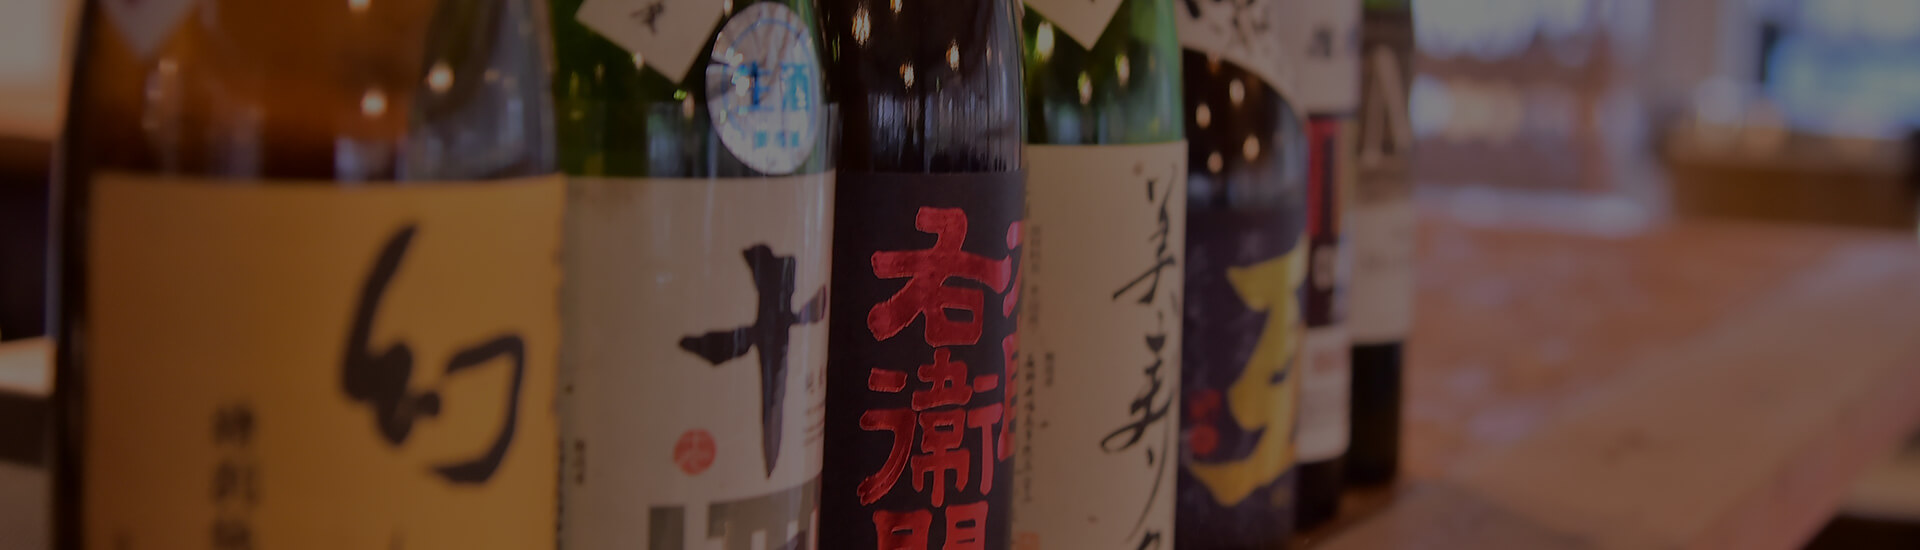 選び抜かれた日本酒